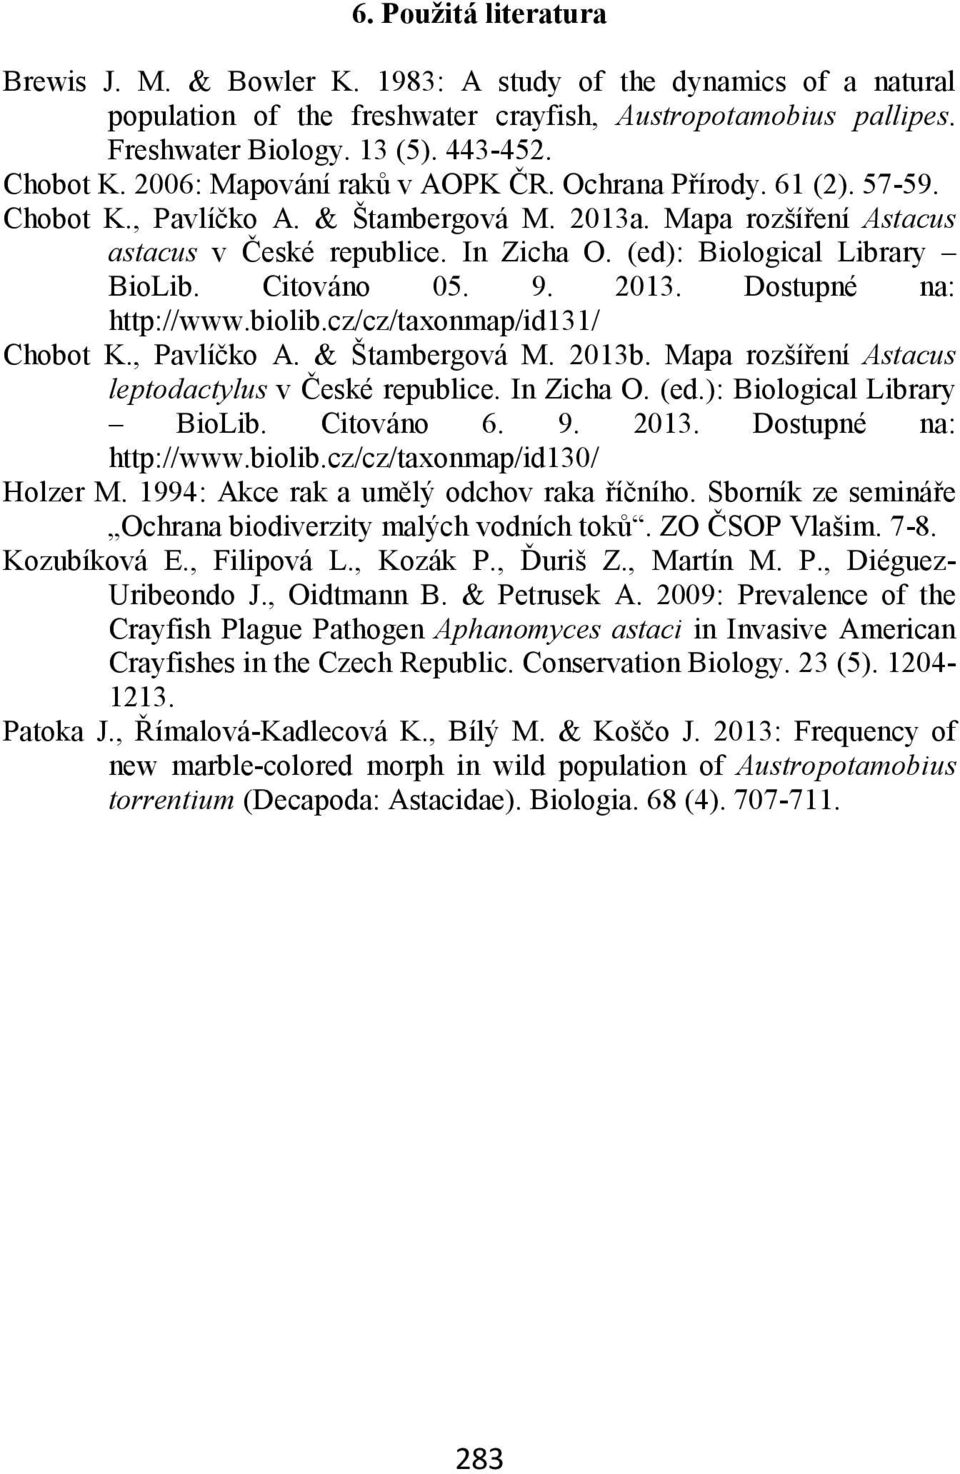 (ed): Biological Library BioLib. Citováno 05. 9. 2013. Dostupné na: http://www.biolib.cz/cz/taxonmap/id131/ Chobot K., Pavlíčko A. & Štambergová M. 2013b.